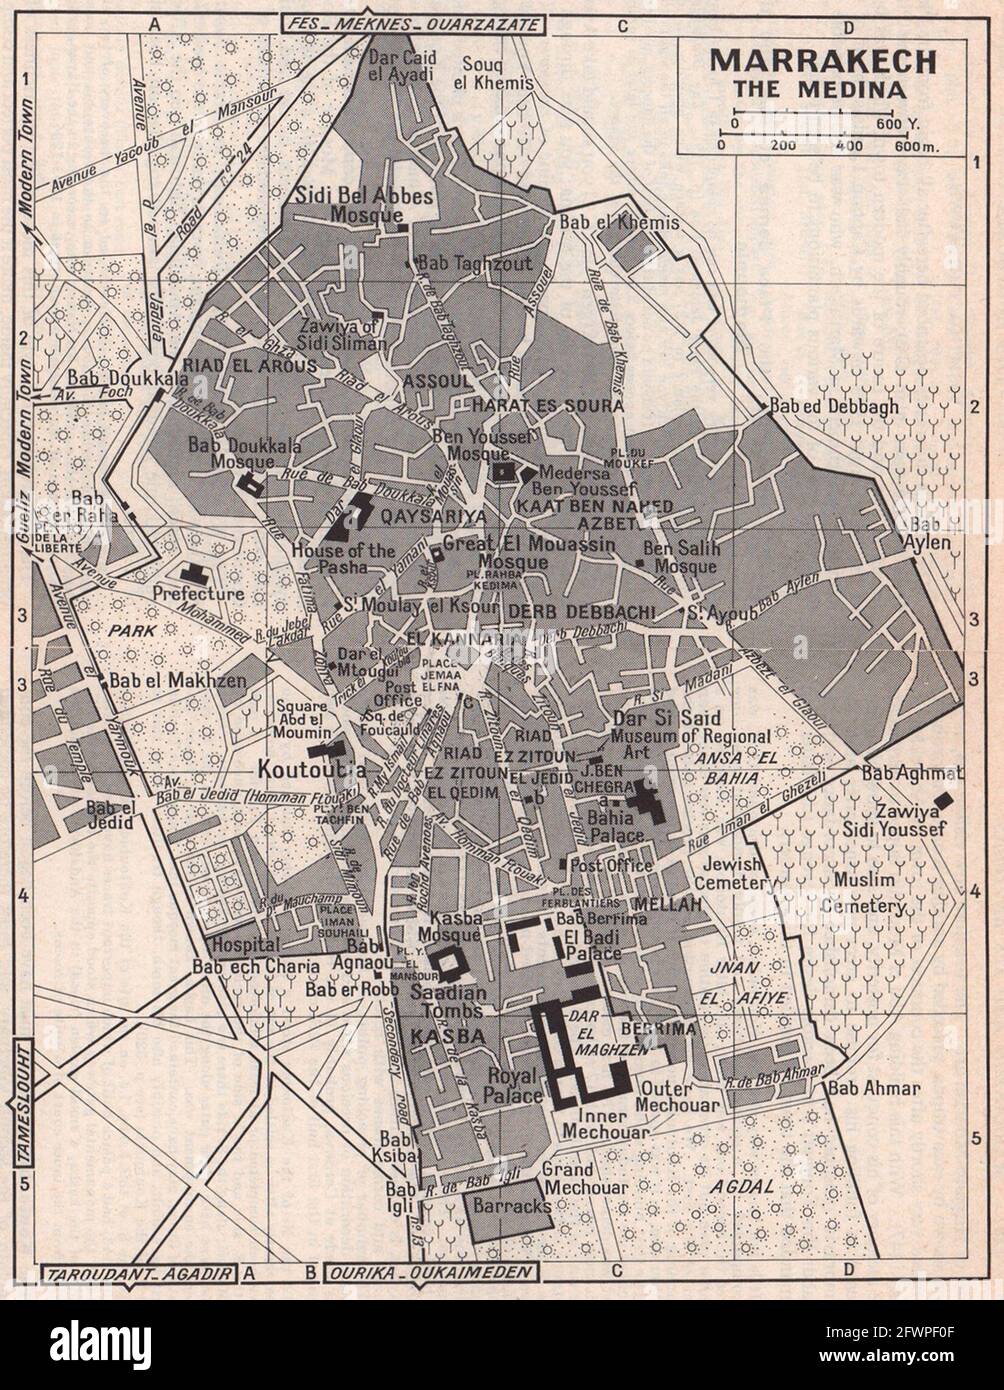 Marrakesch - die Medina Vintage-Stadt Stadttouristenplan. Marokko 1966 alte Karte Stockfoto